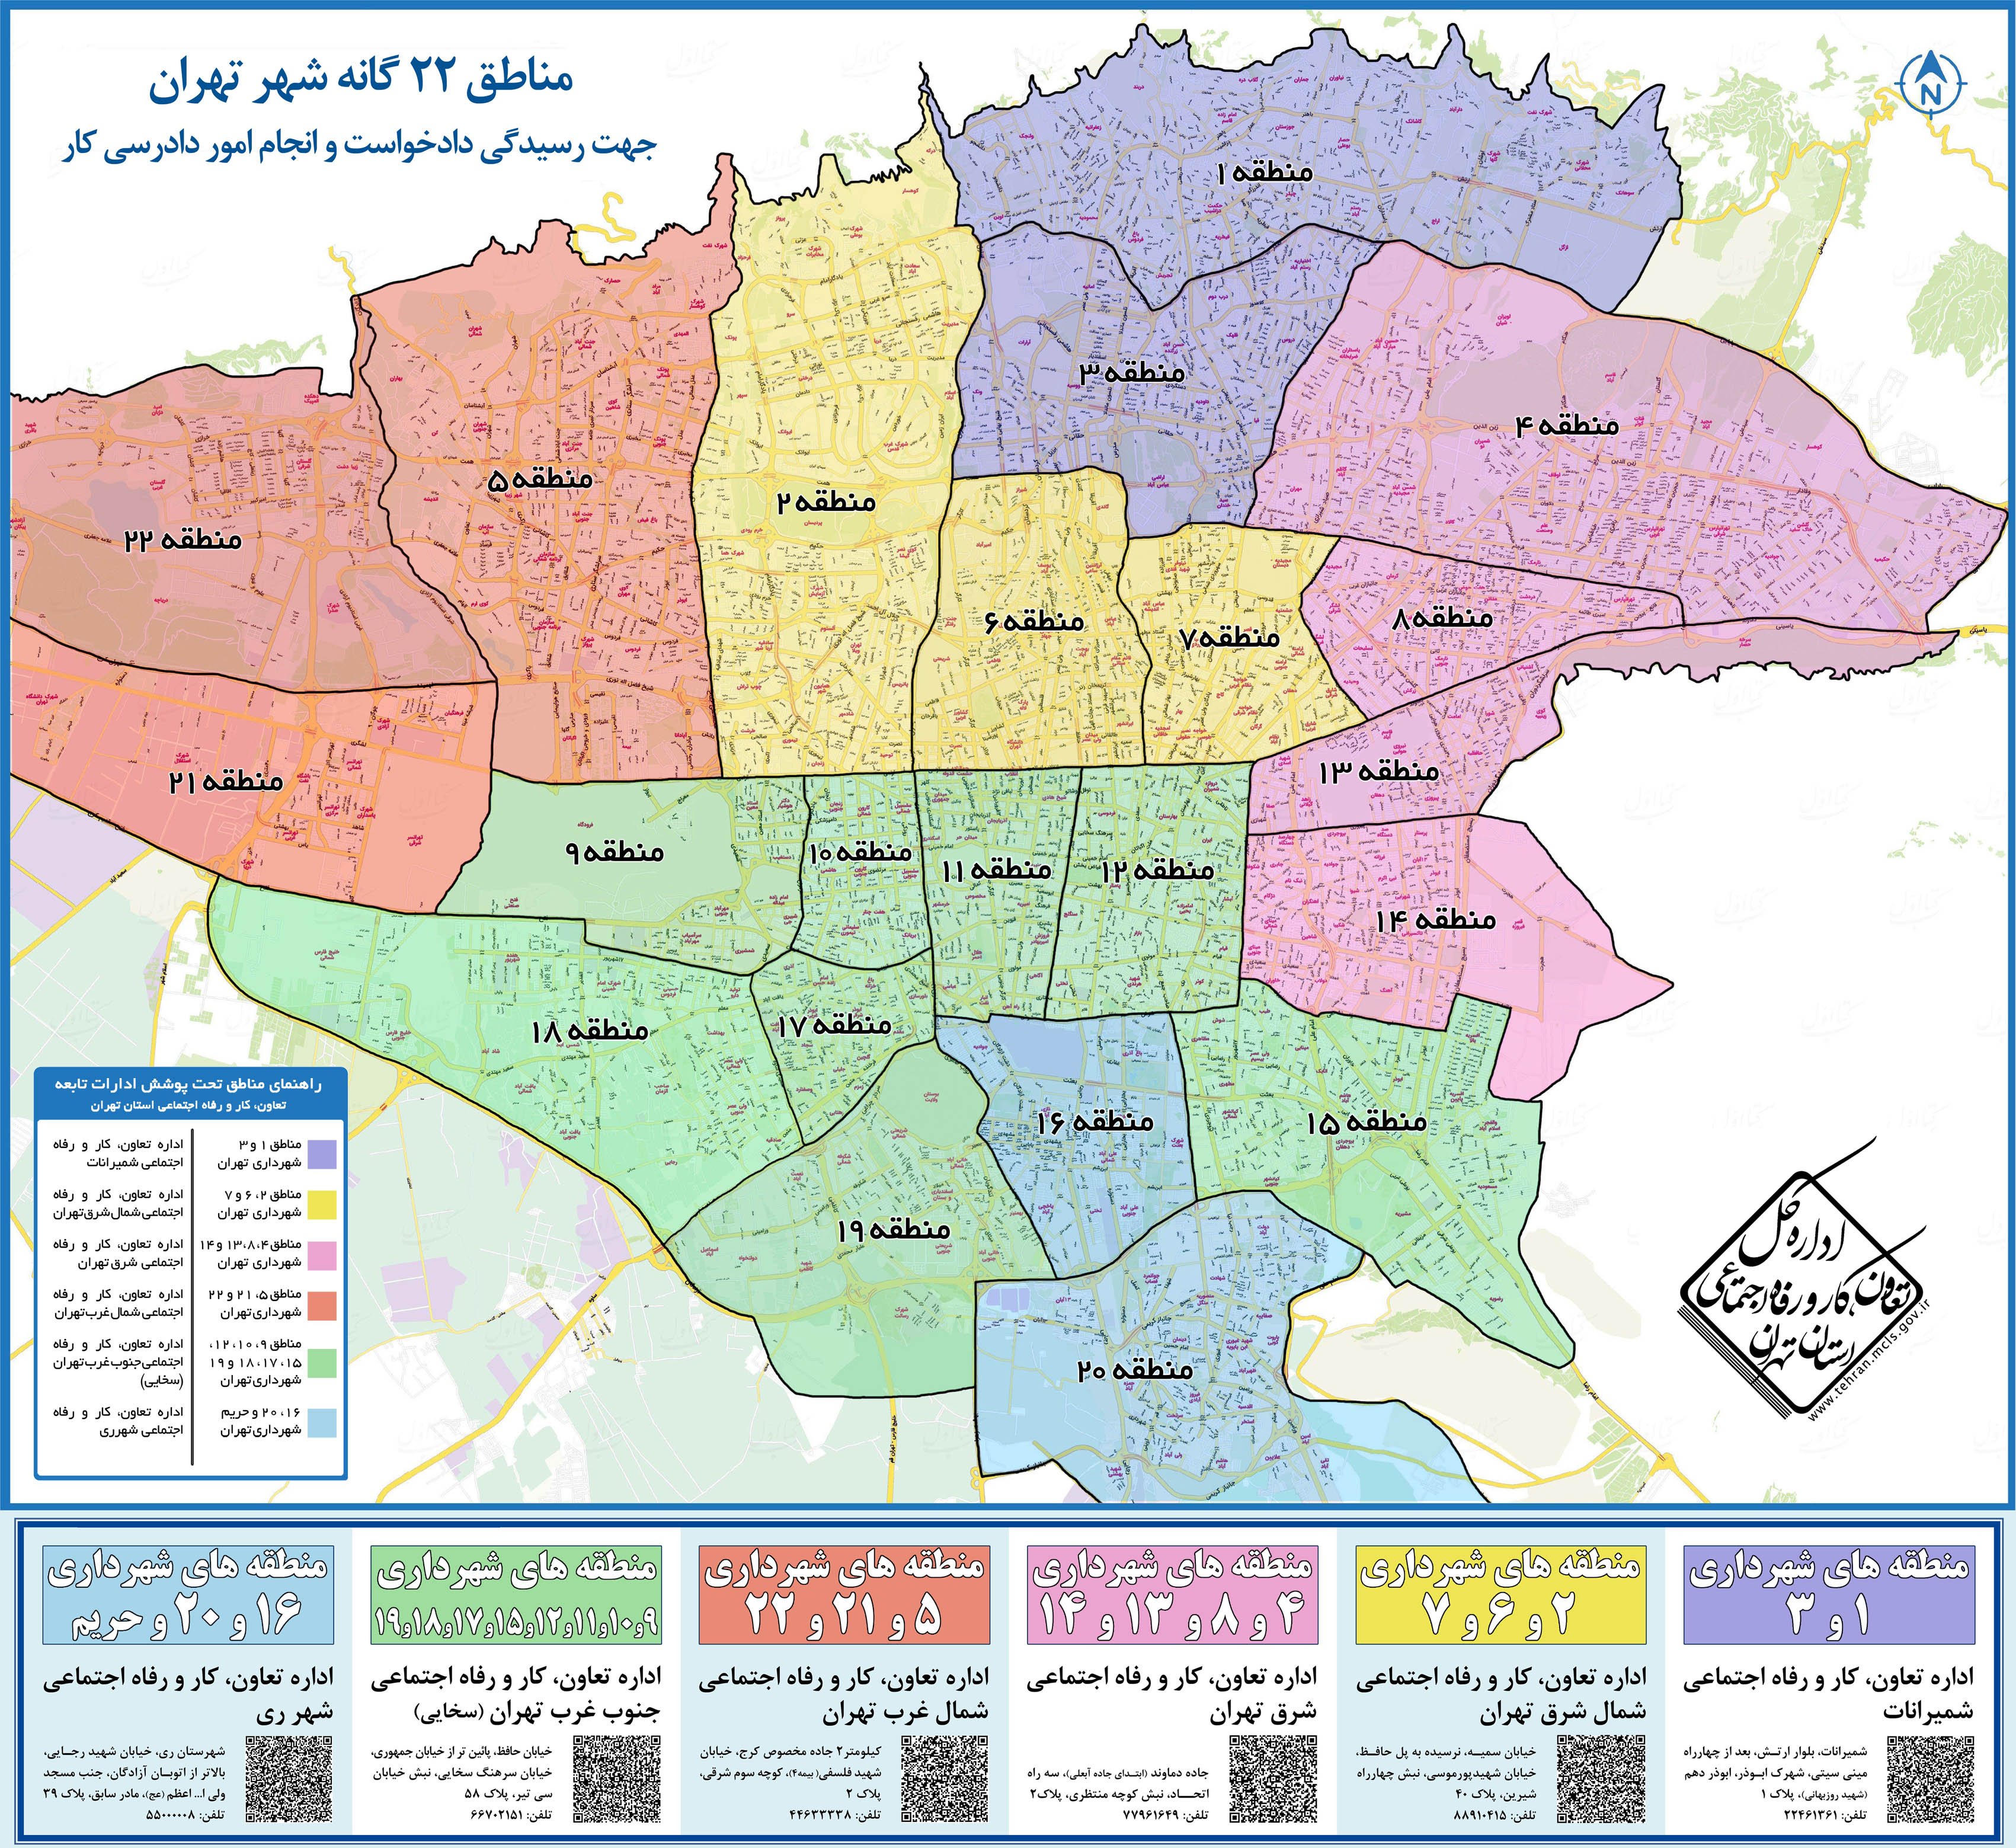 مناطق 22 گانه شهر تهران جهت رسیدگی دادخواست و انجام امور دادرسی کار